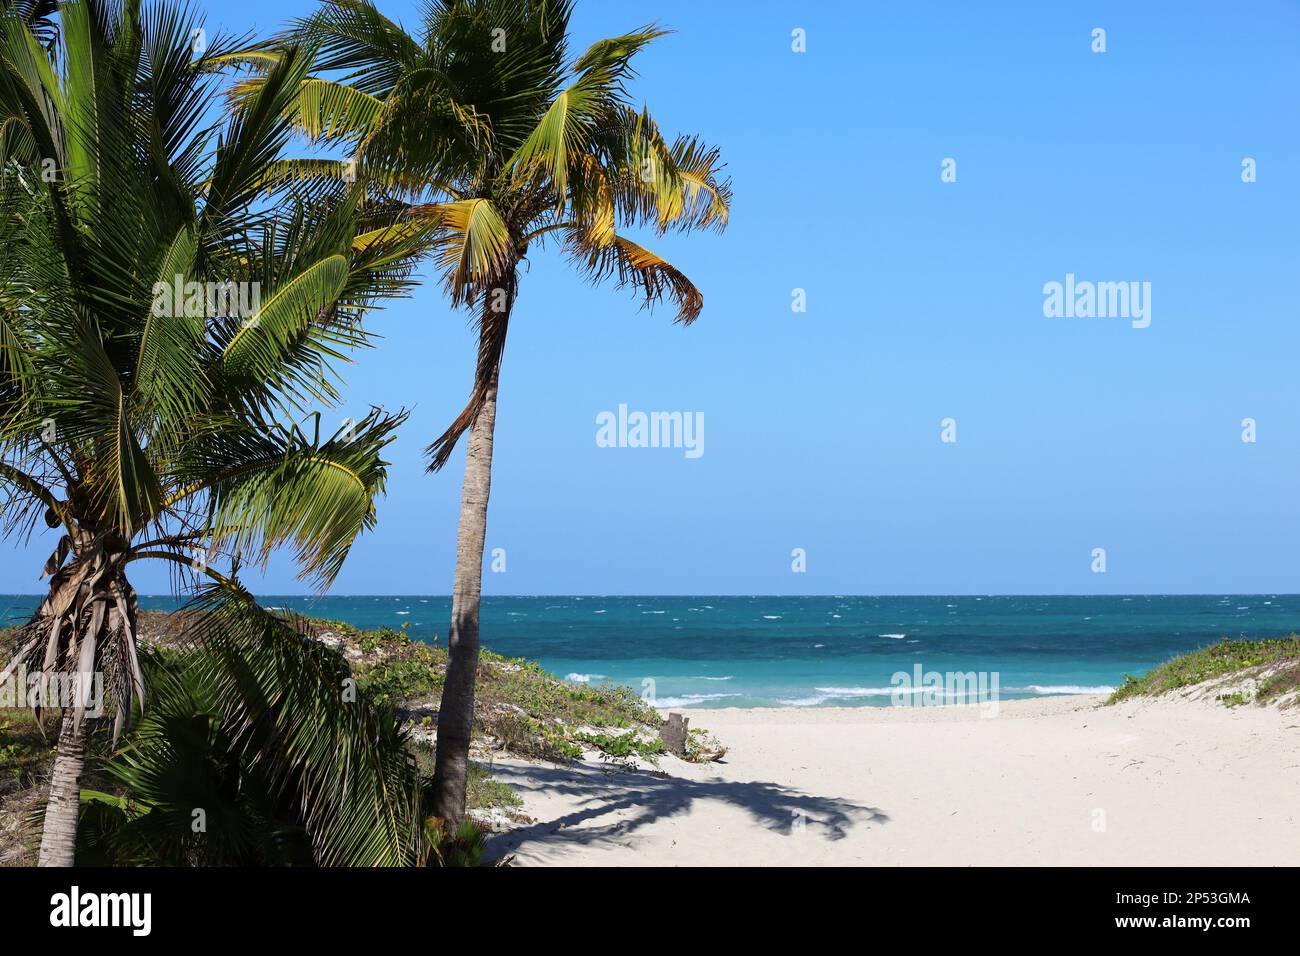 Vue pittoresque sur la plage tropicale avec sable blanc et palmiers à noix de coco. Station touristique sur l'île des Caraïbes Banque D'Images